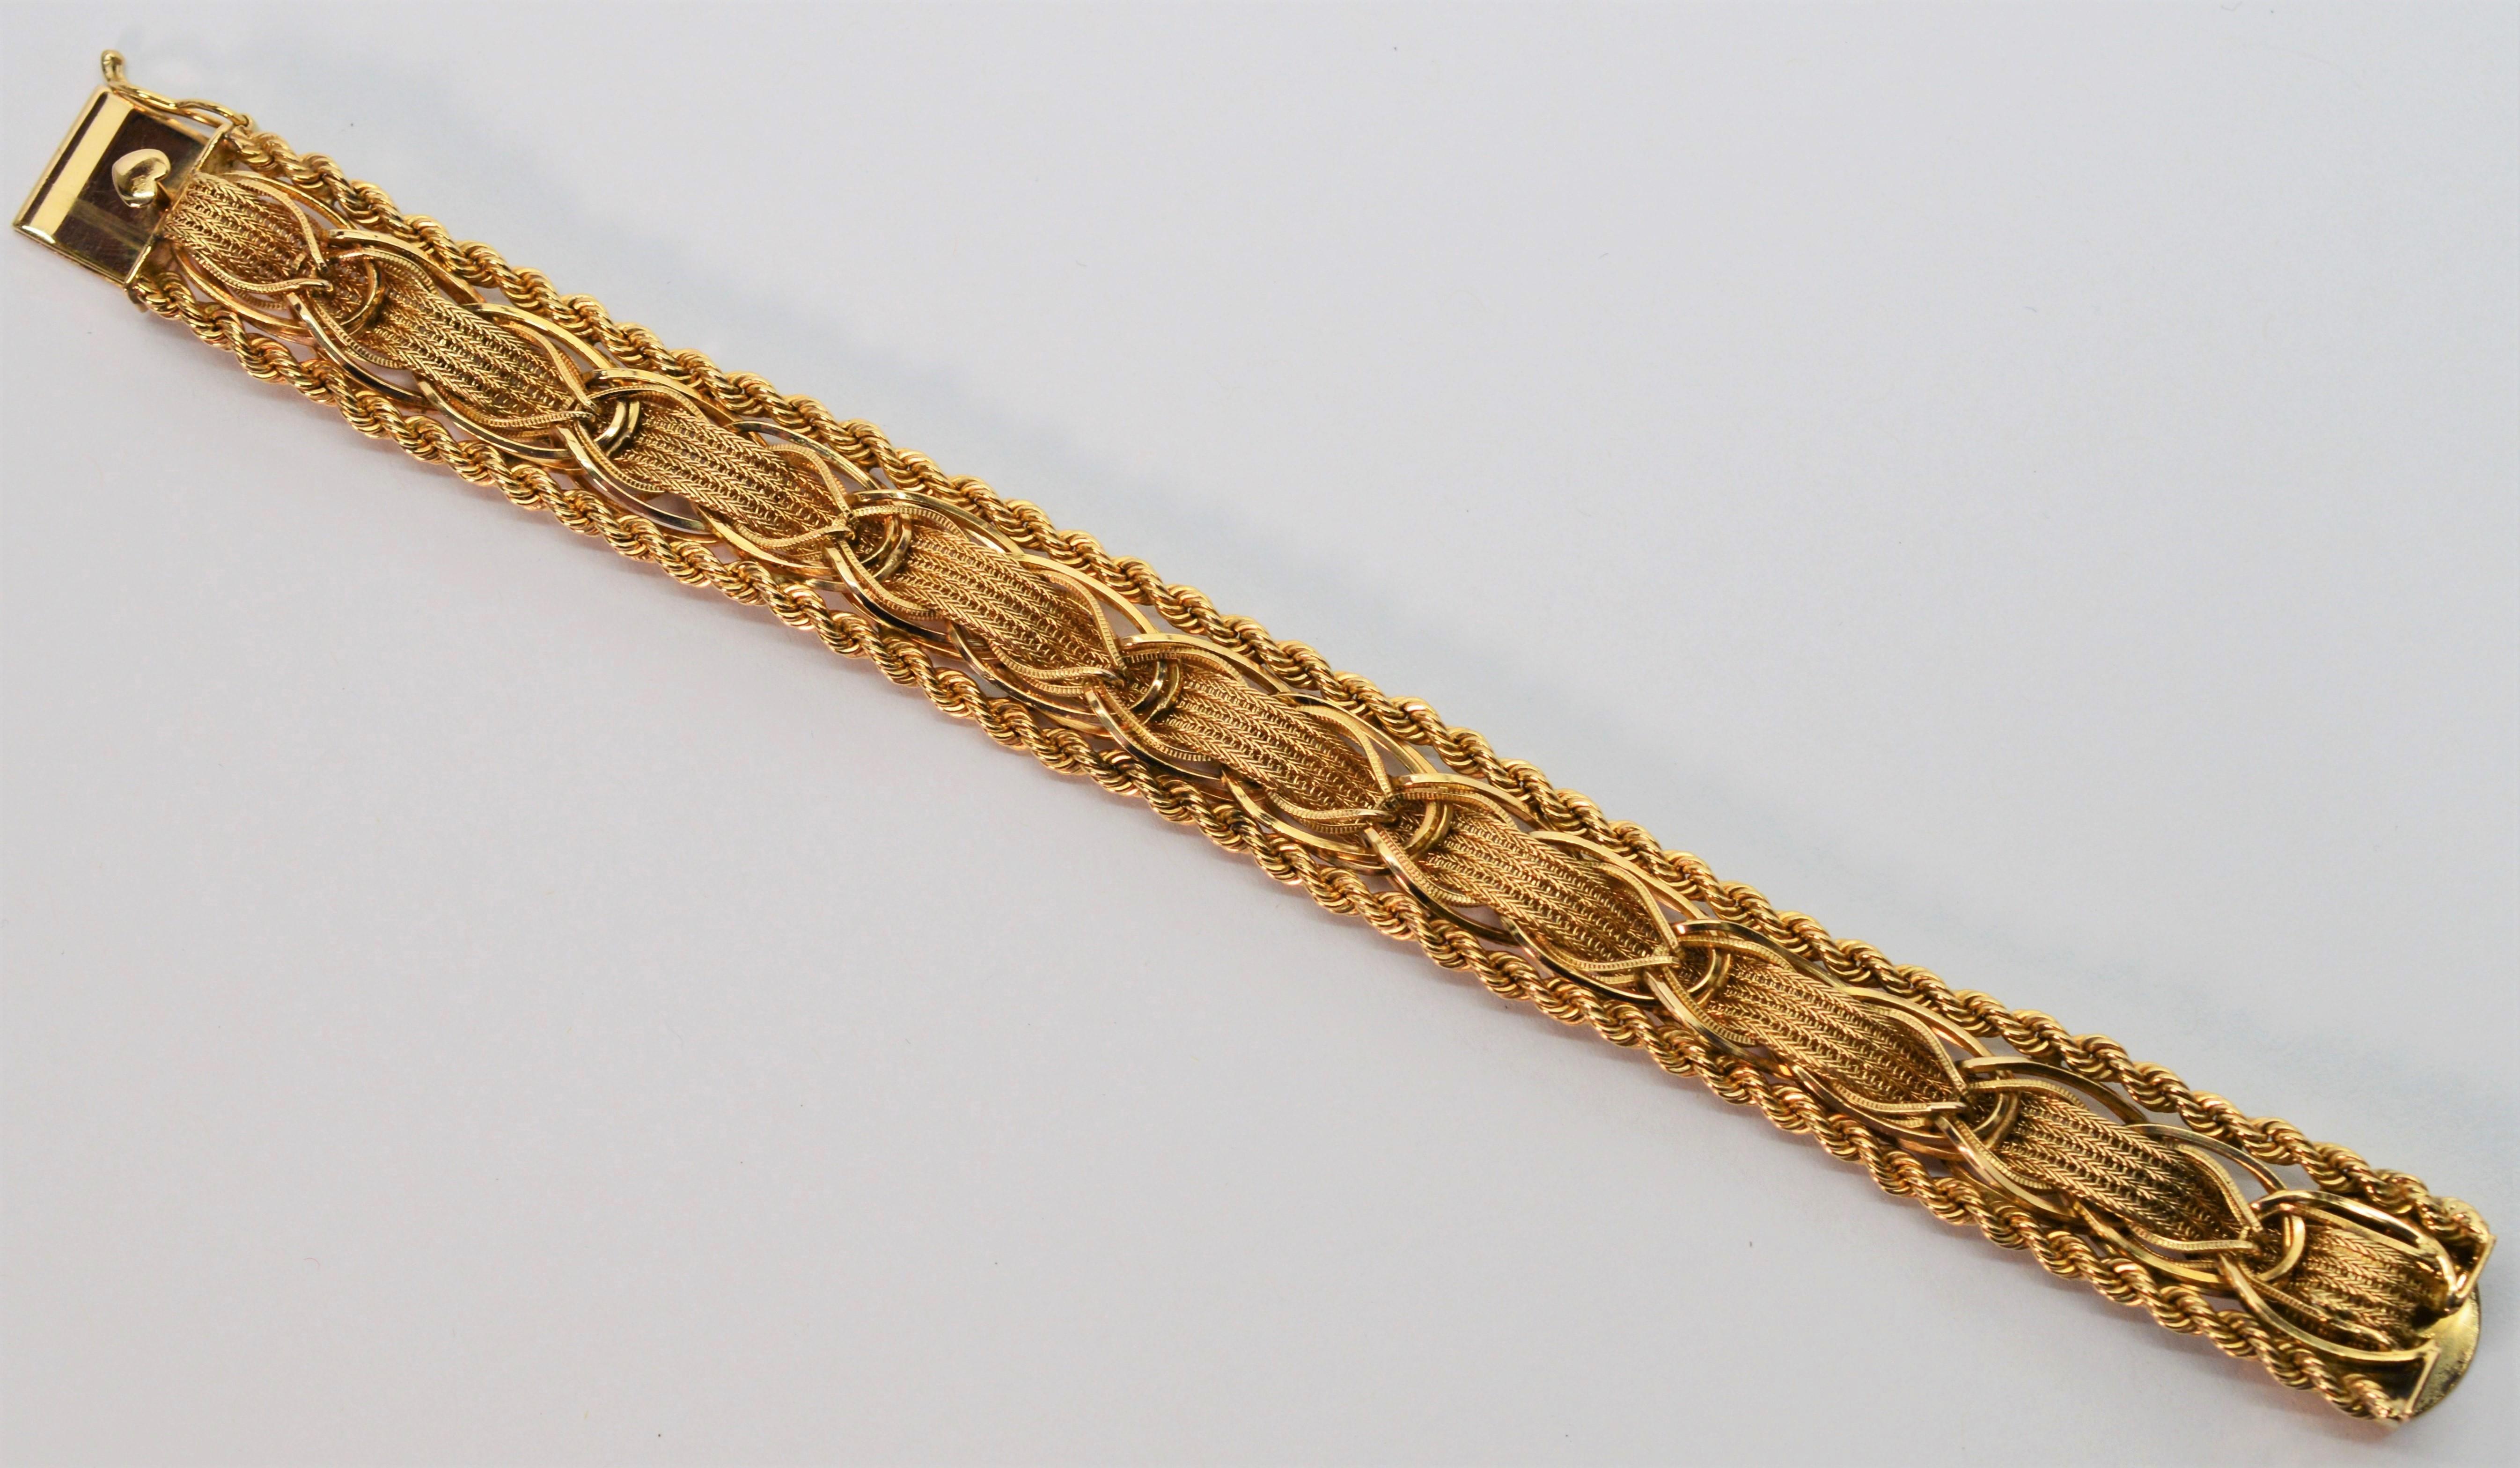 Verschlungene Bänder aus strukturiertem 14-karätigem Gelbgold, die kreativ mit hellen Gelbgoldgliedern verwoben und mit goldenen Seilen verziert sind, machen dieses Armband zu einem kunstvollen Fund. 
Mit einer Länge von 7 Zoll und einer Breite von